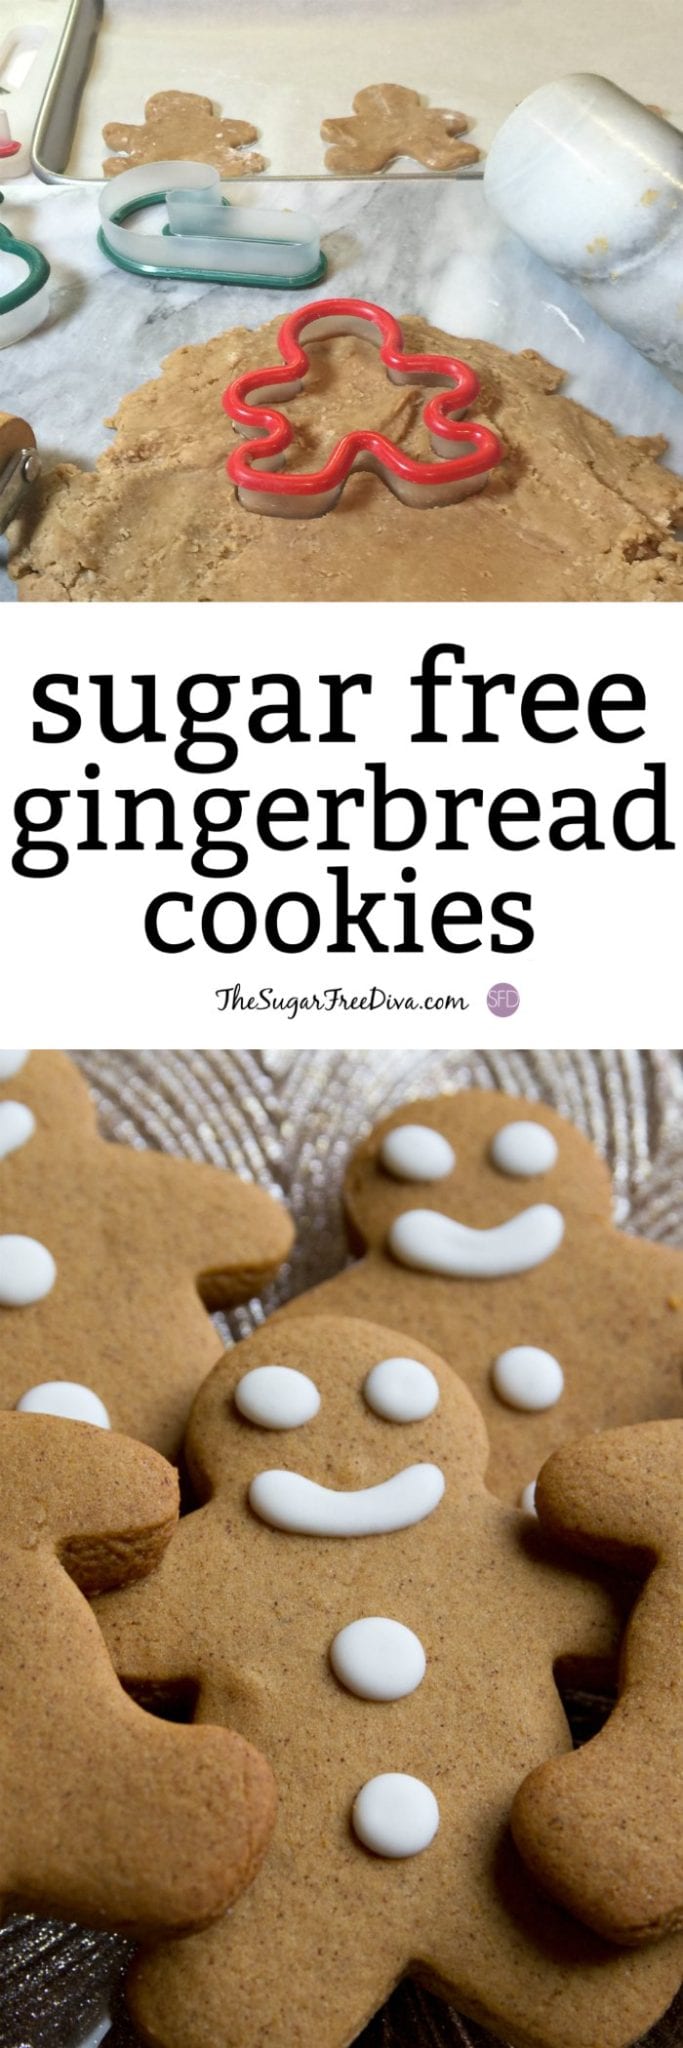 sugar free gingerbread cookies